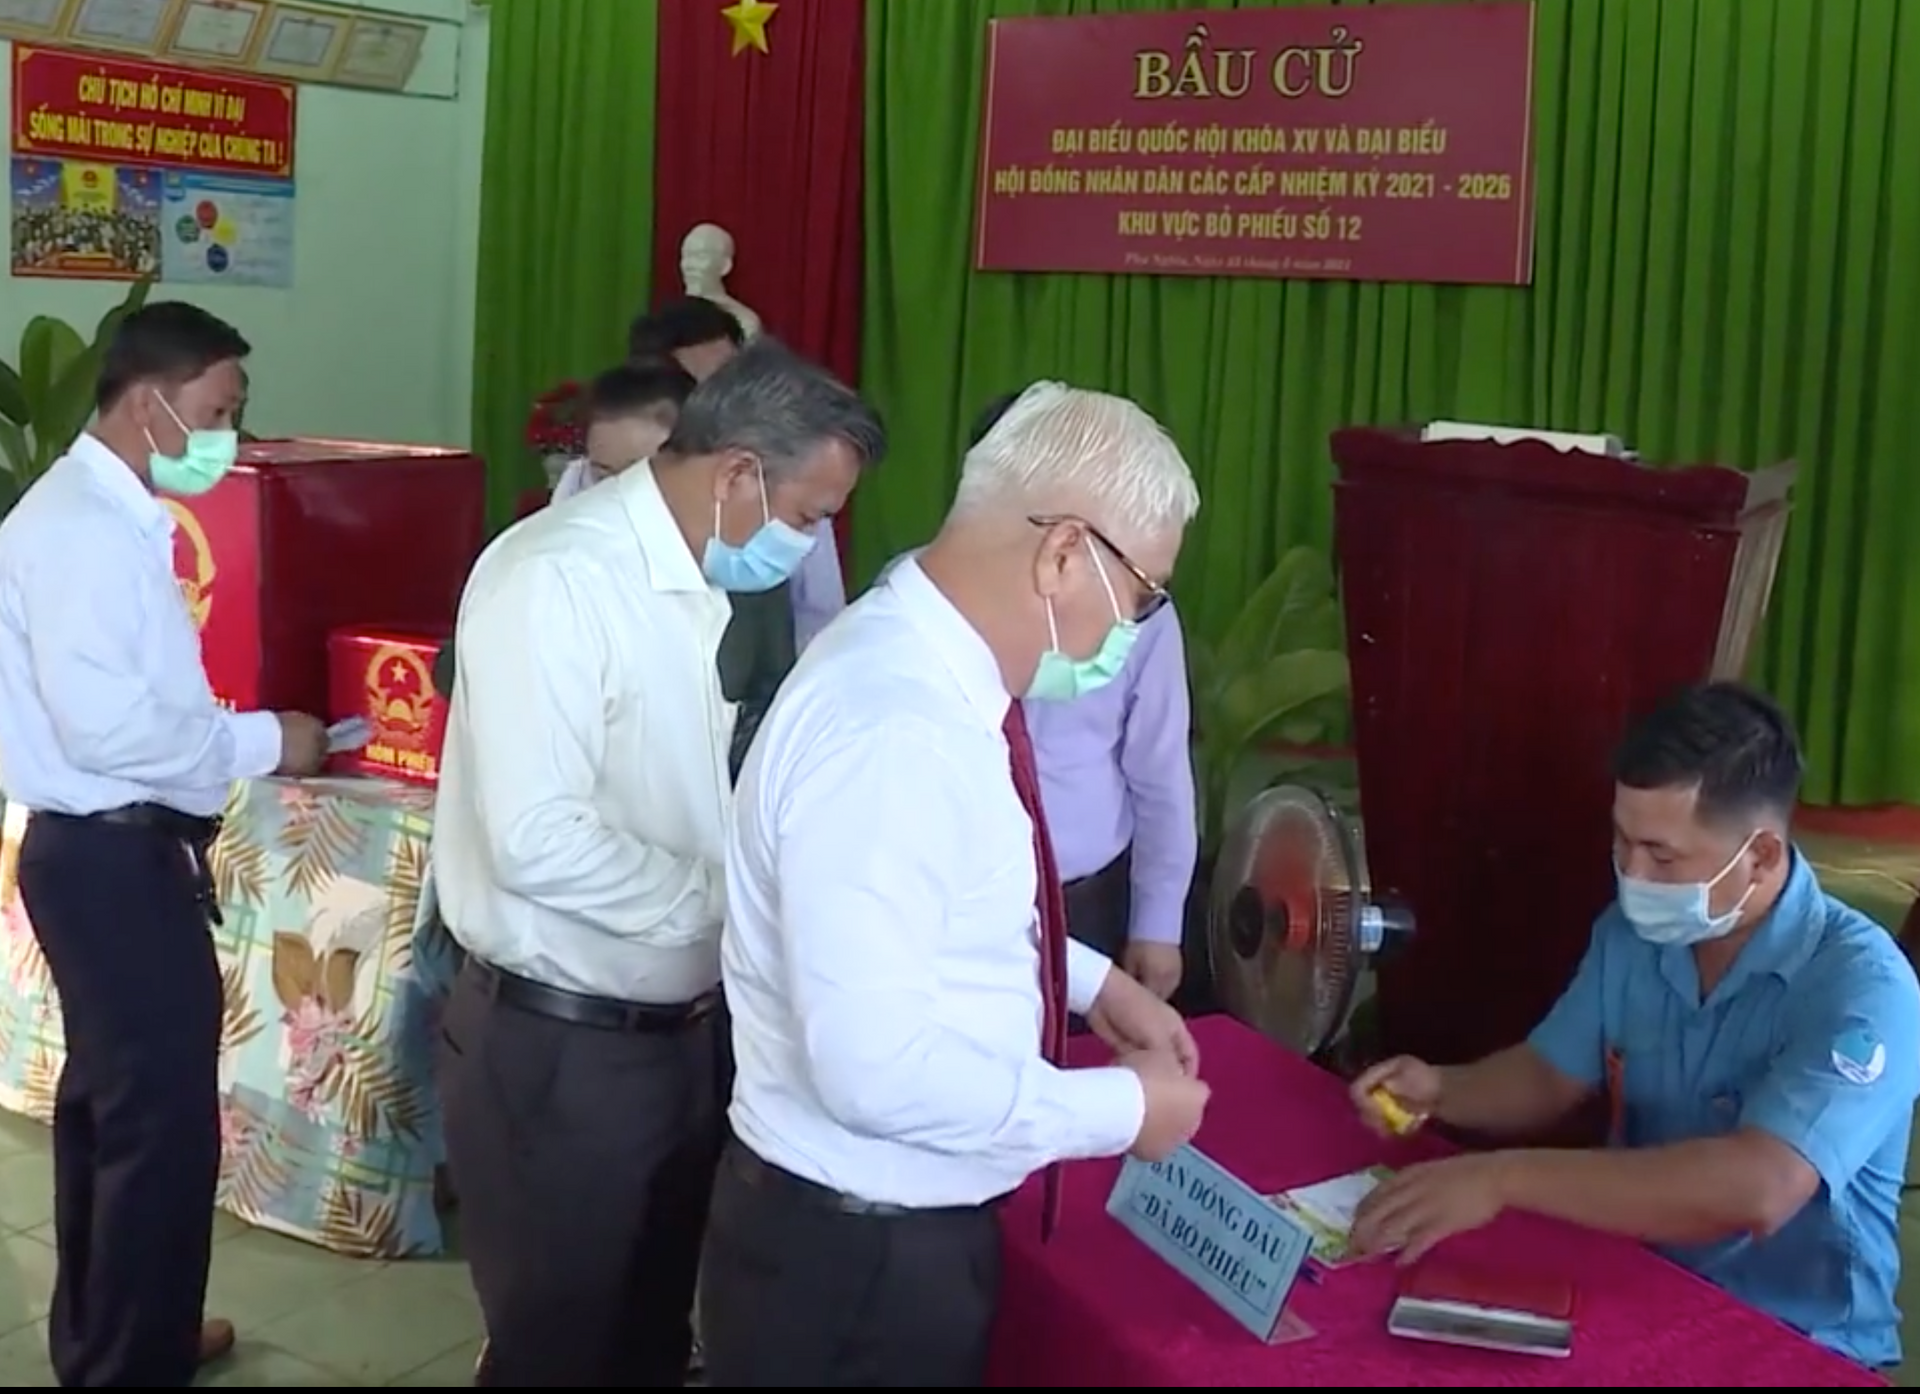 Ủy viên Trung ương Đảng, Bí thư Tỉnh ủy, ứng cử đại biểu Quốc hội khóa XV Nguyễn Văn Lợi thực hiện quyền bầu cử